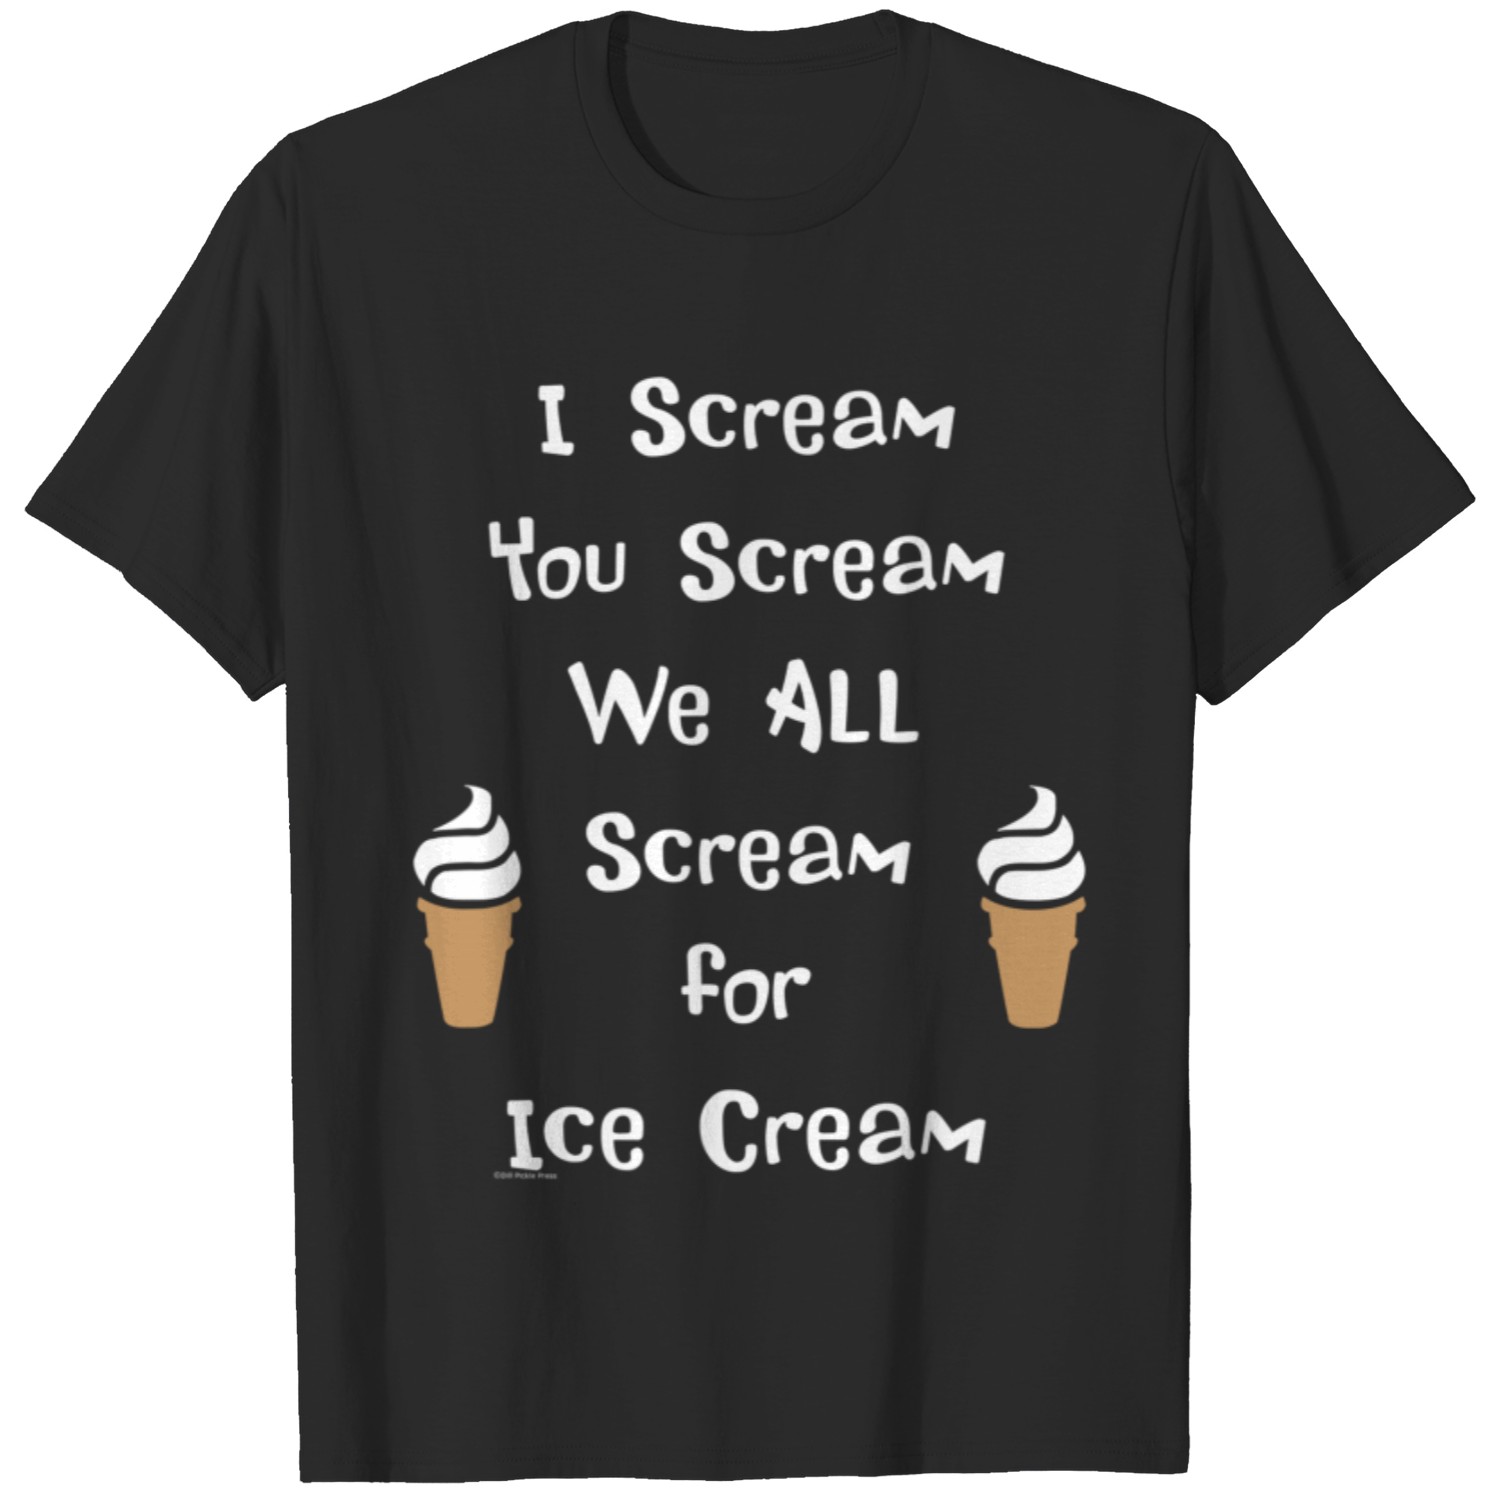 Soft Serve, I Scream You Scream We All Scream for Ice Cream T-Shirt